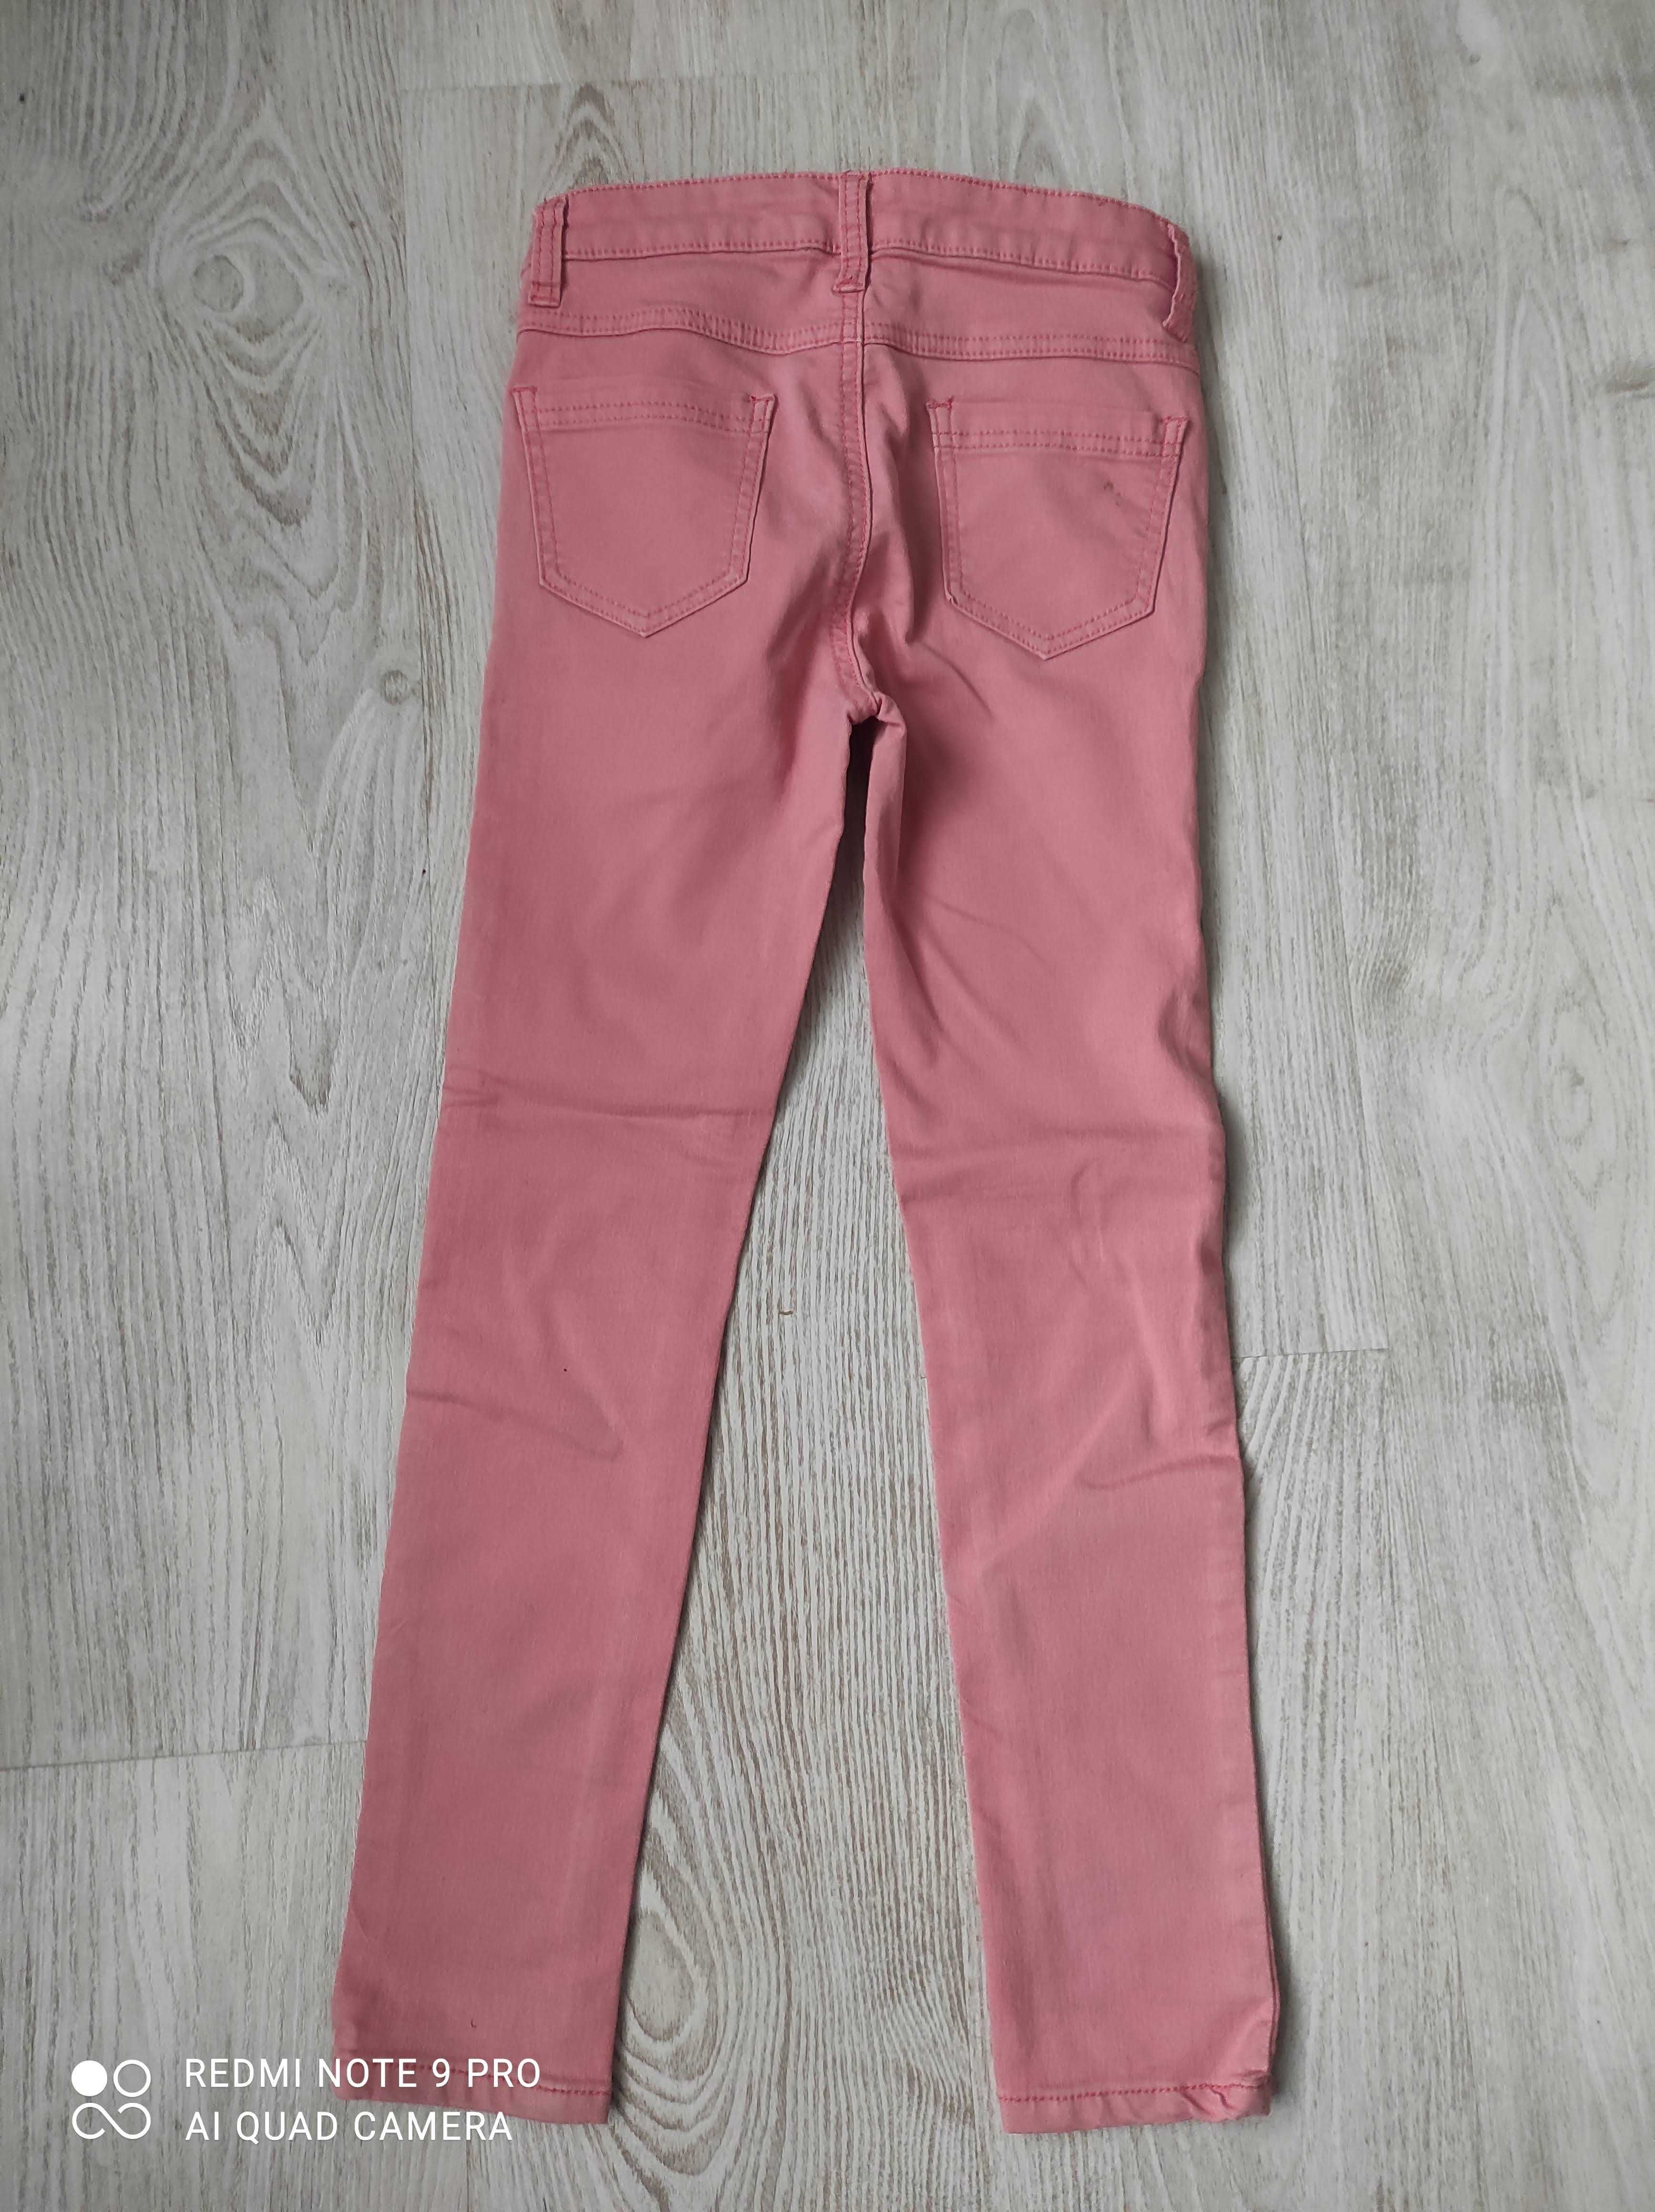 Коралловые джинсы скинни Seppala girls, размер 128